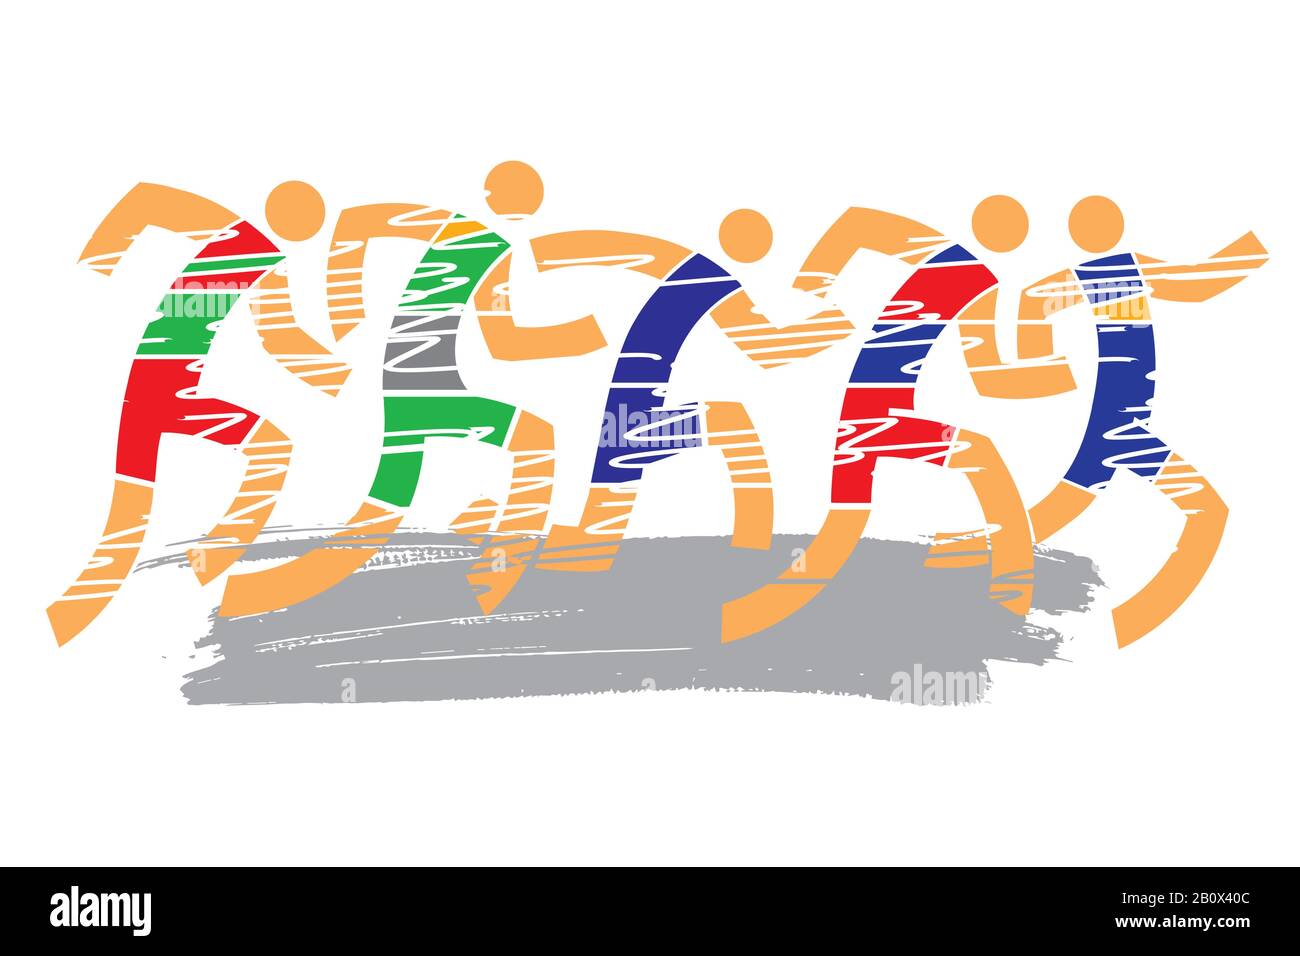 Laufwettbewerb, Marathon. Farbenfrohe, ausdrucksstarke, stilisierte Darstellung von Rennläufern. Vektor verfügbar. Stock Vektor